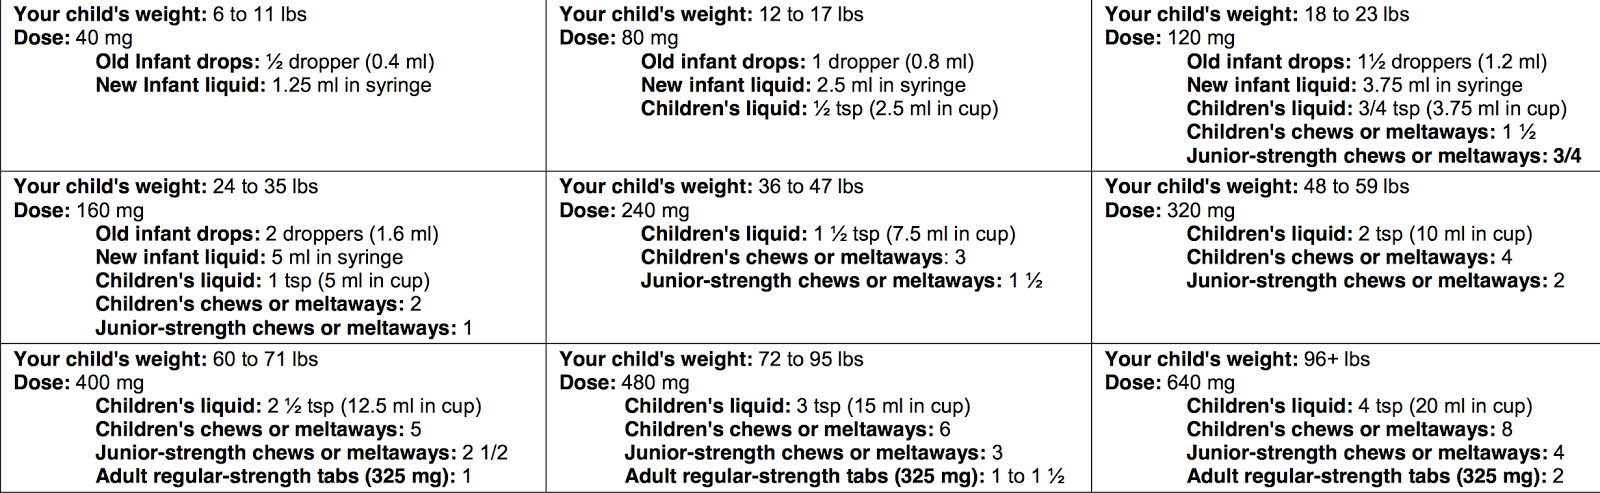 Infant Ibuprofen Dosage Chart 2018